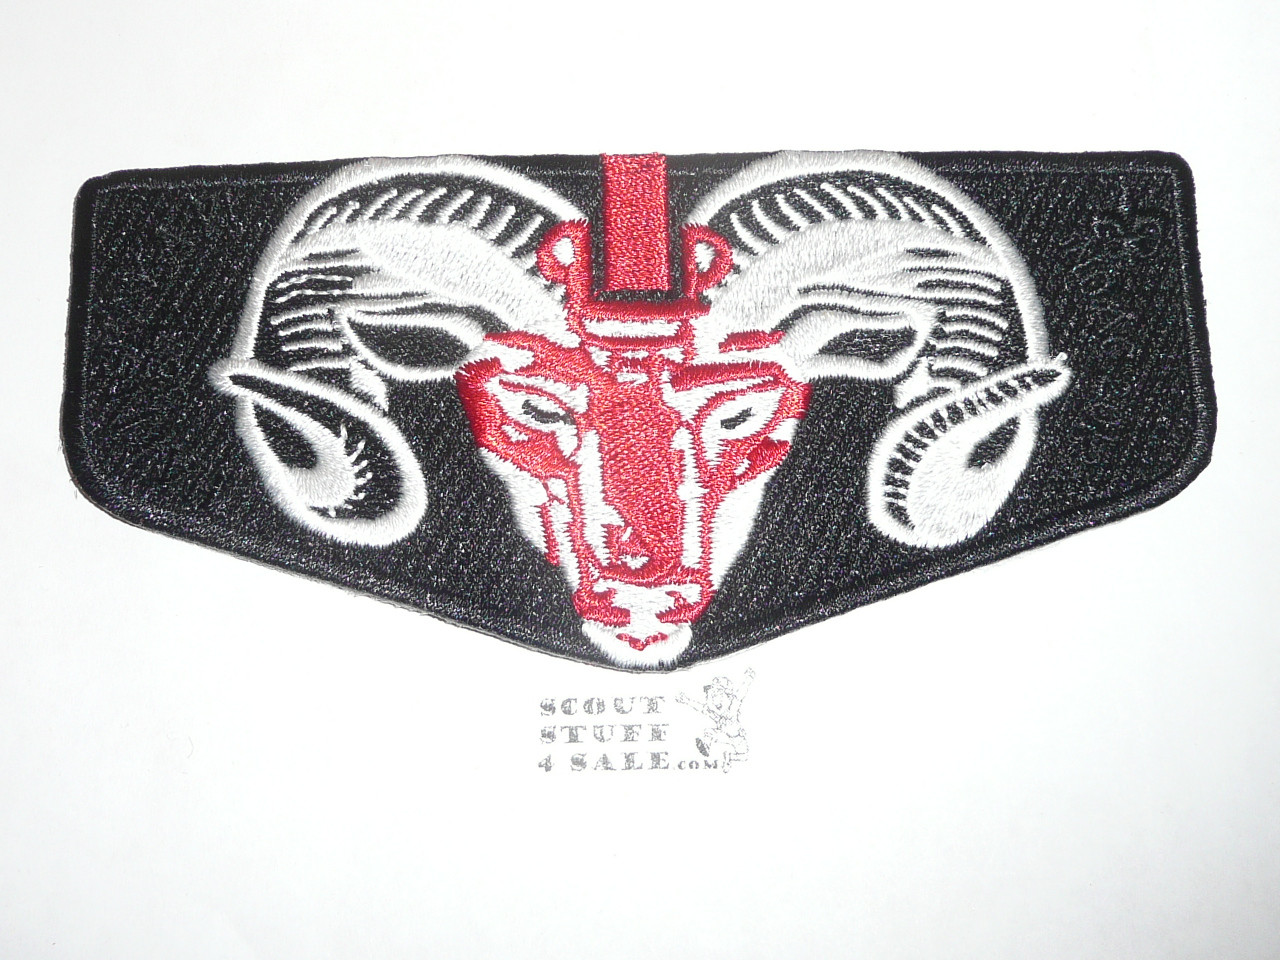 Order of the Arrow Lodge #387 Ha-Kin-Skay-A-Ki s38 2012 NOAC Flap Patch - Boy Scout